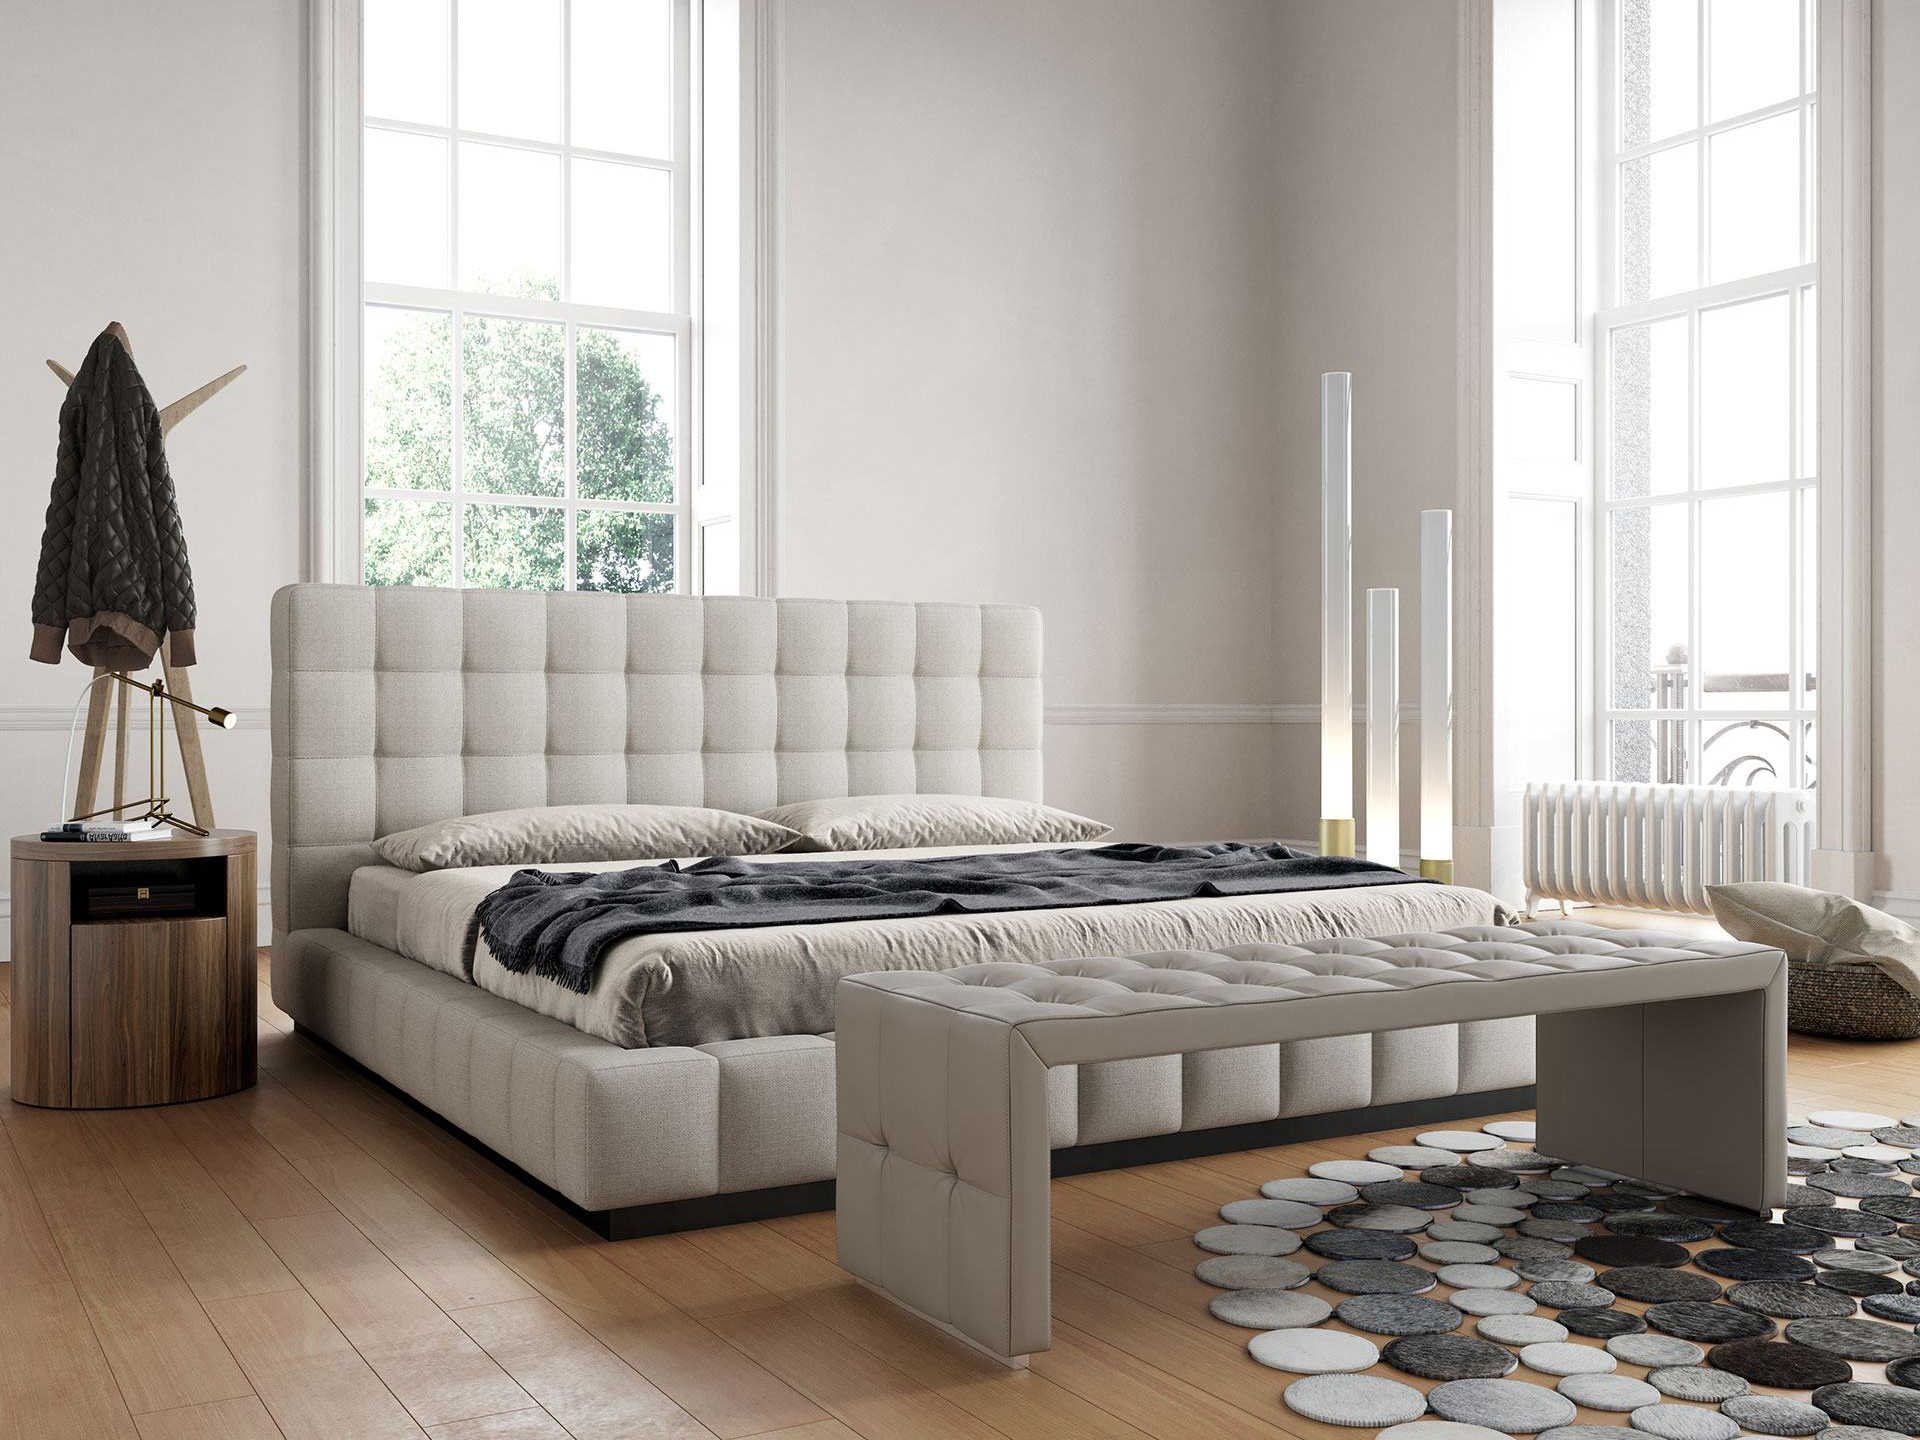 thompson bedroom furniture set